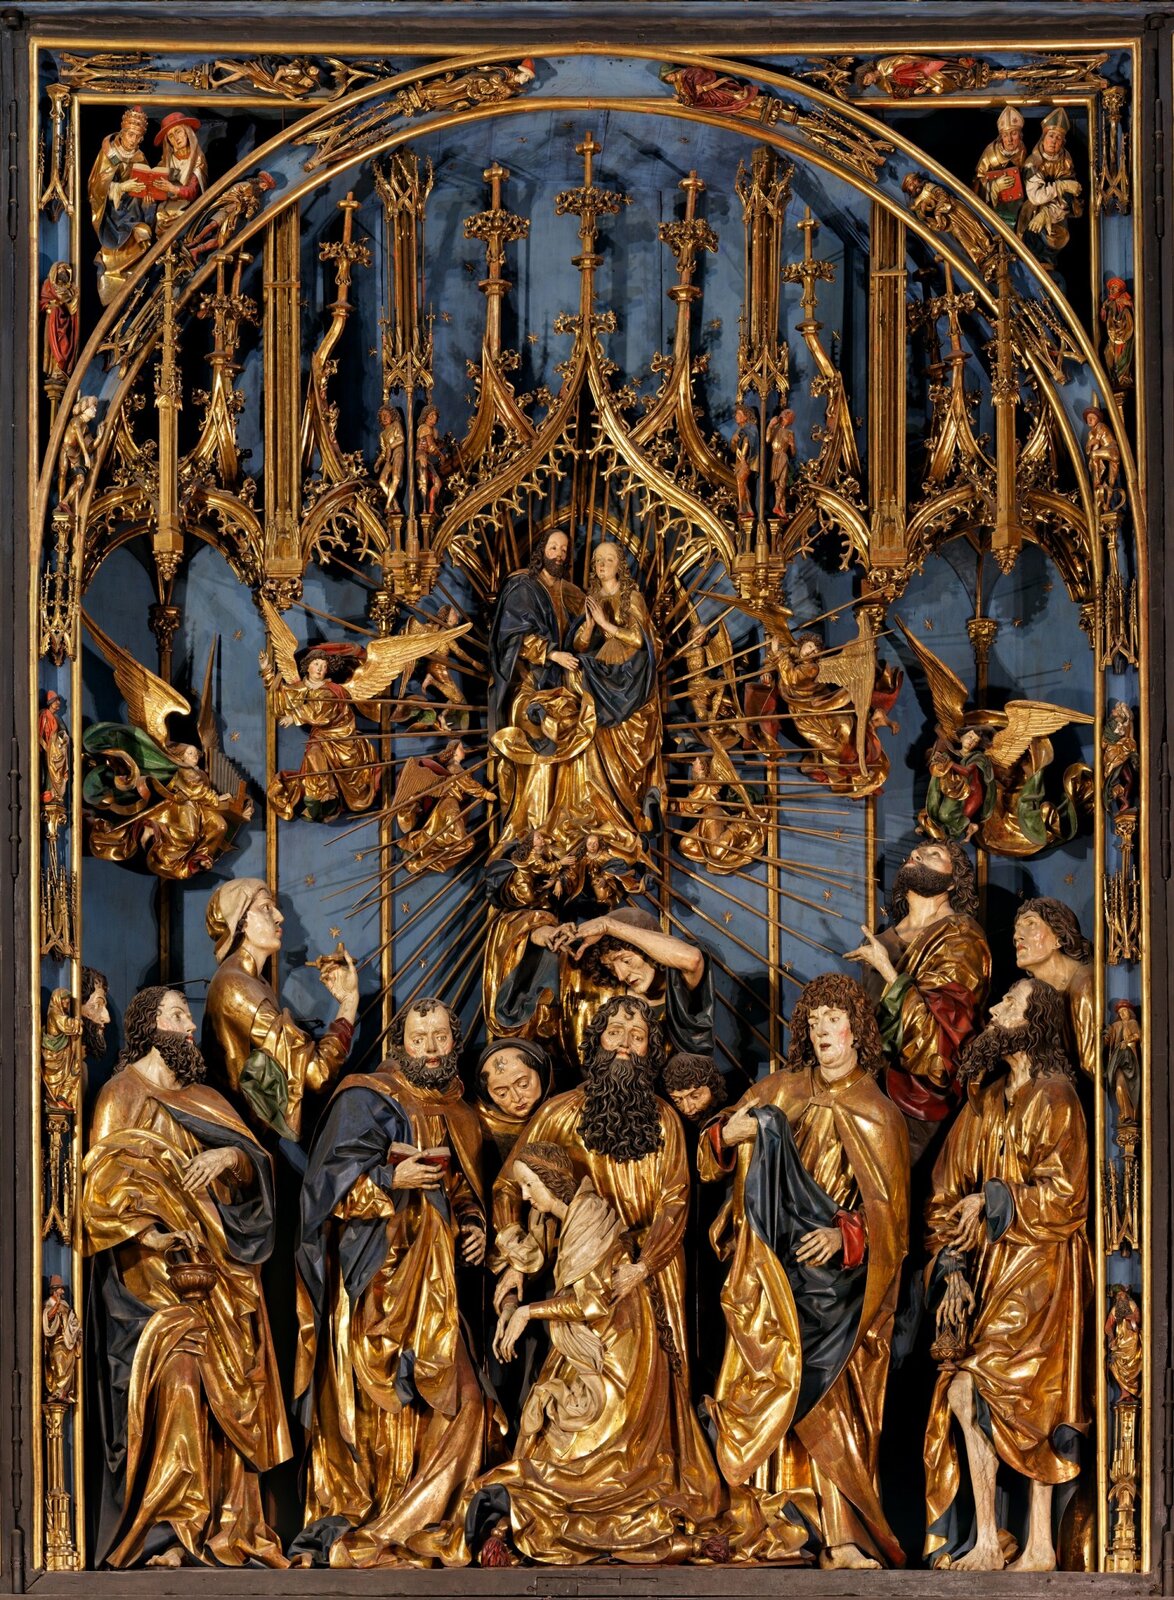 Ilustracja przedstawia scenę główną z Ołtarza Mariackiego. Dominuje w niej kolor złoty oraz niebieski. Na tym fragmencie ołtarzu widoczne są figury osób. W centrum znajduje się mężczyzna i kobieta.